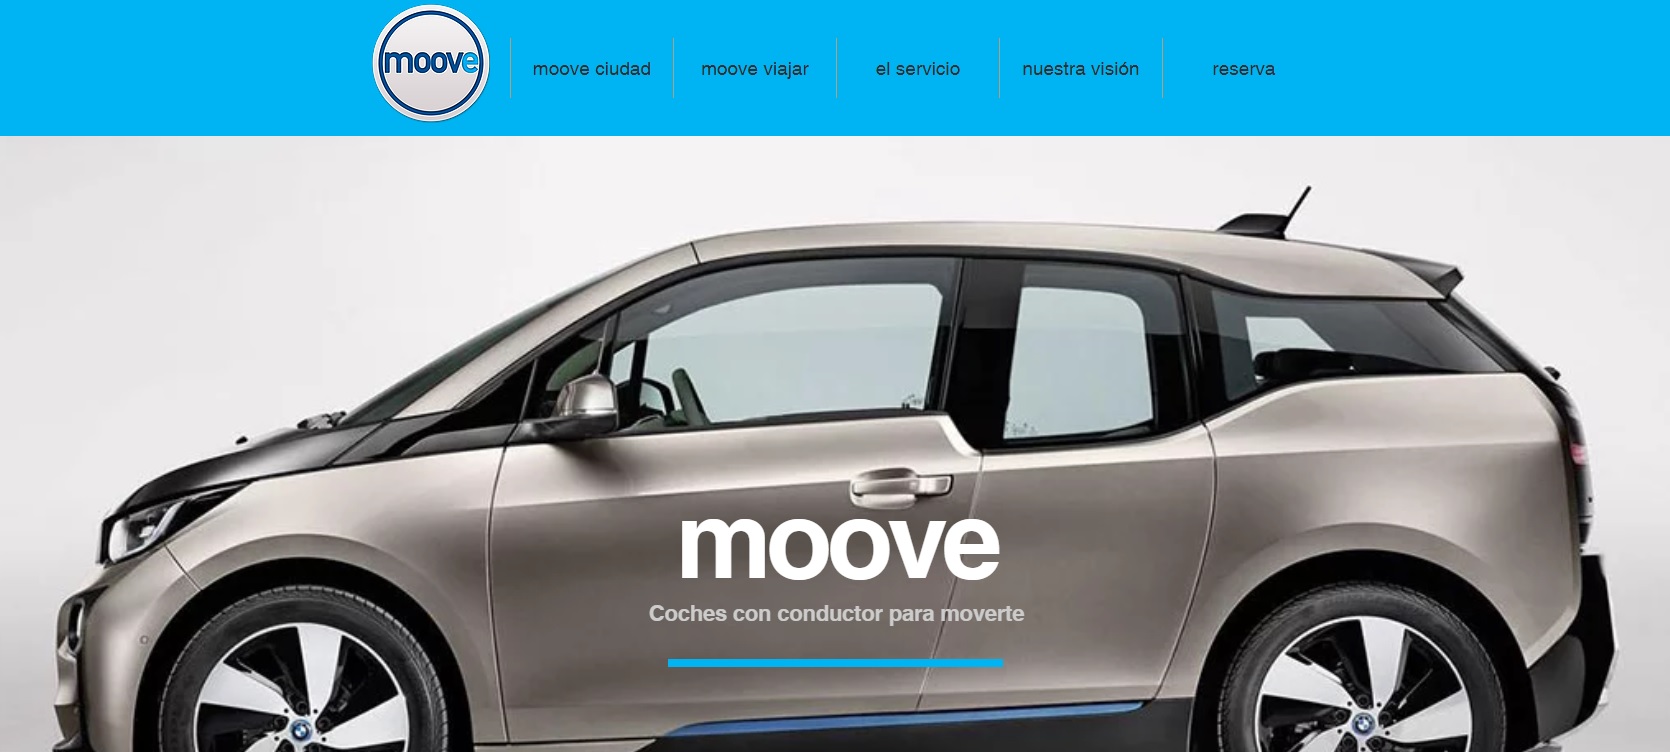 Moove Cars cierra 2018 con unos ingresos de 30 millones de euros y con 2.000 VTC en activo